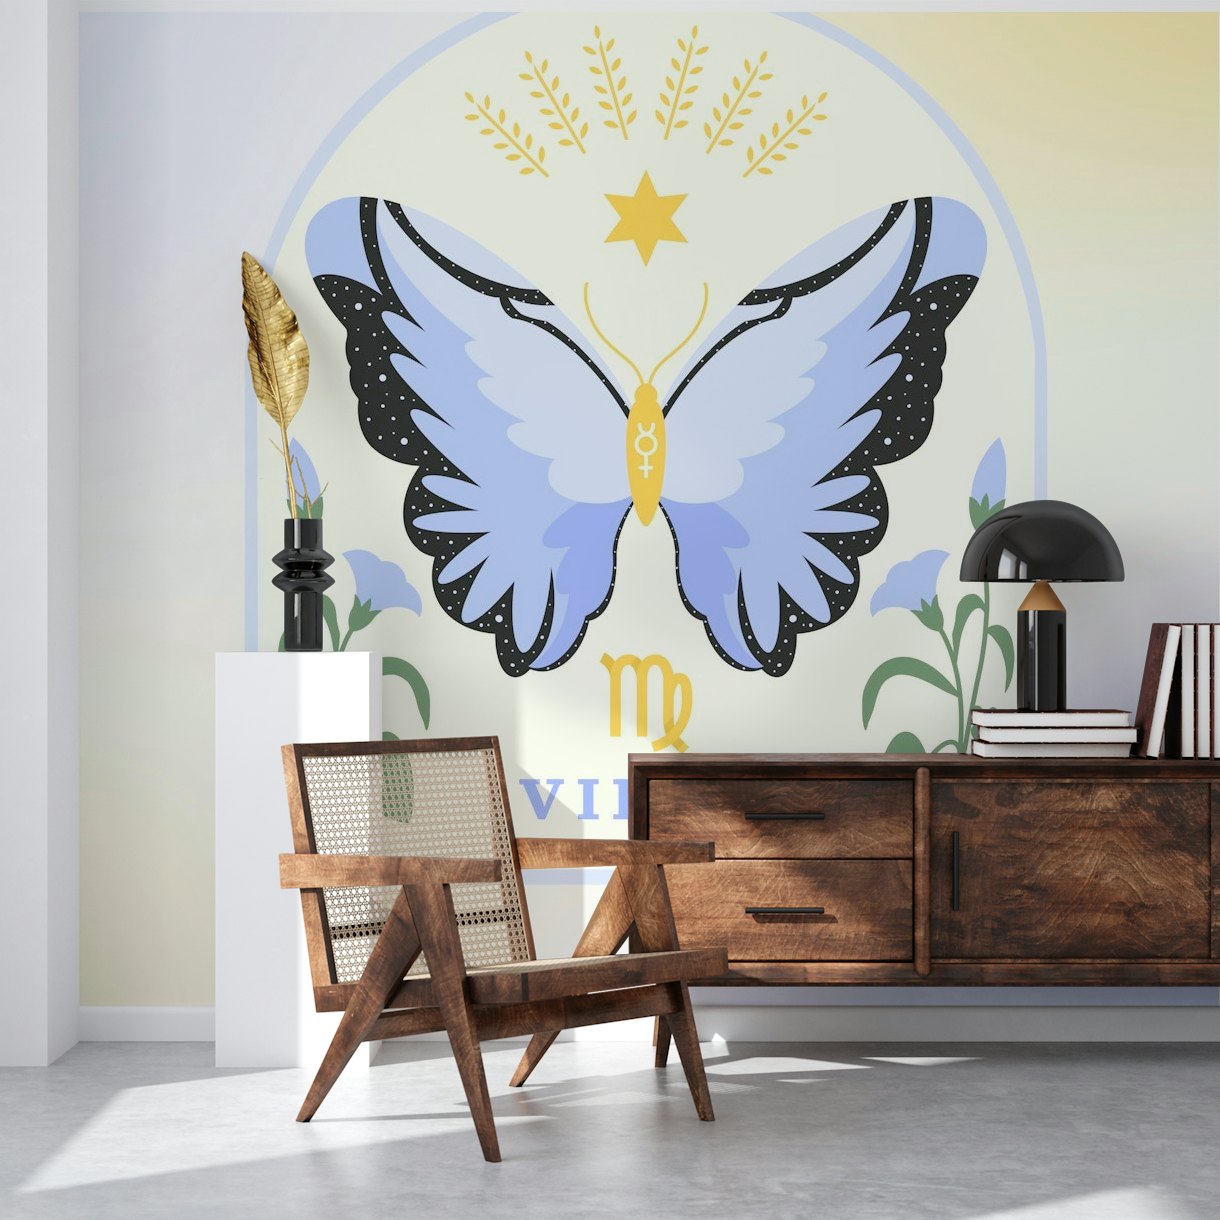 Enchanting Virgo Zodiac sign with butterflies wallpaper mural